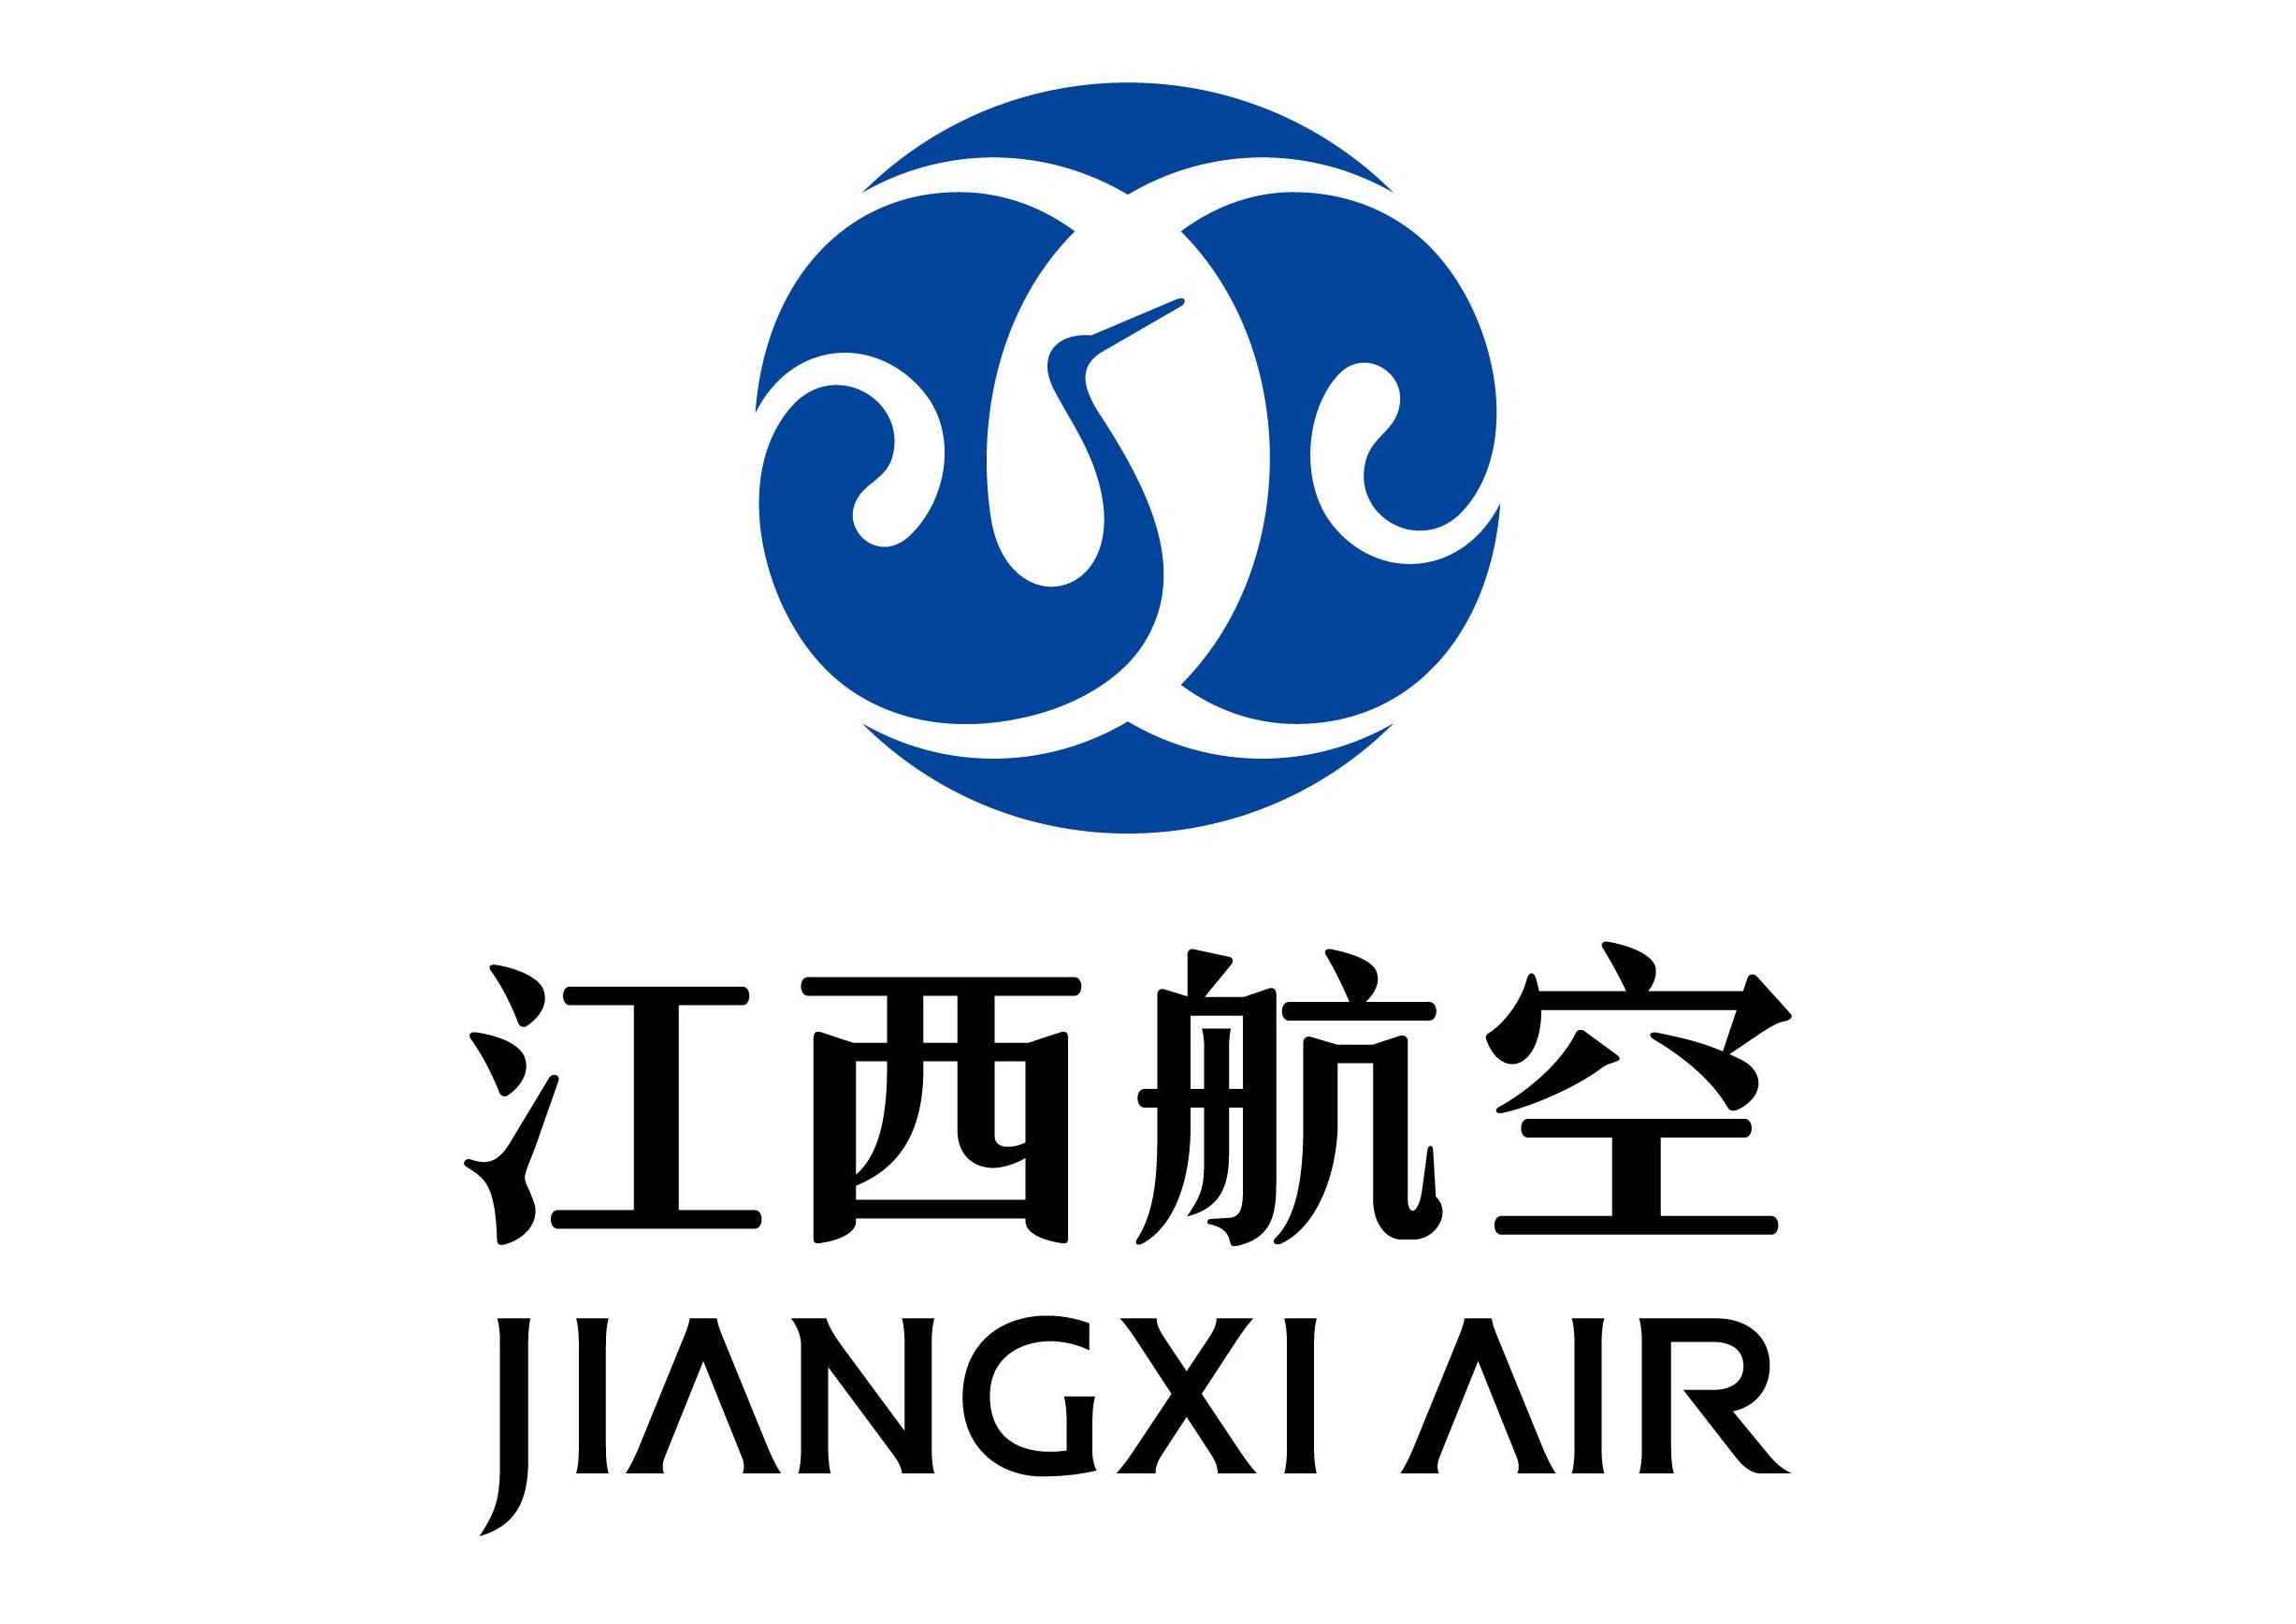 江西航空 Jiangxi Air